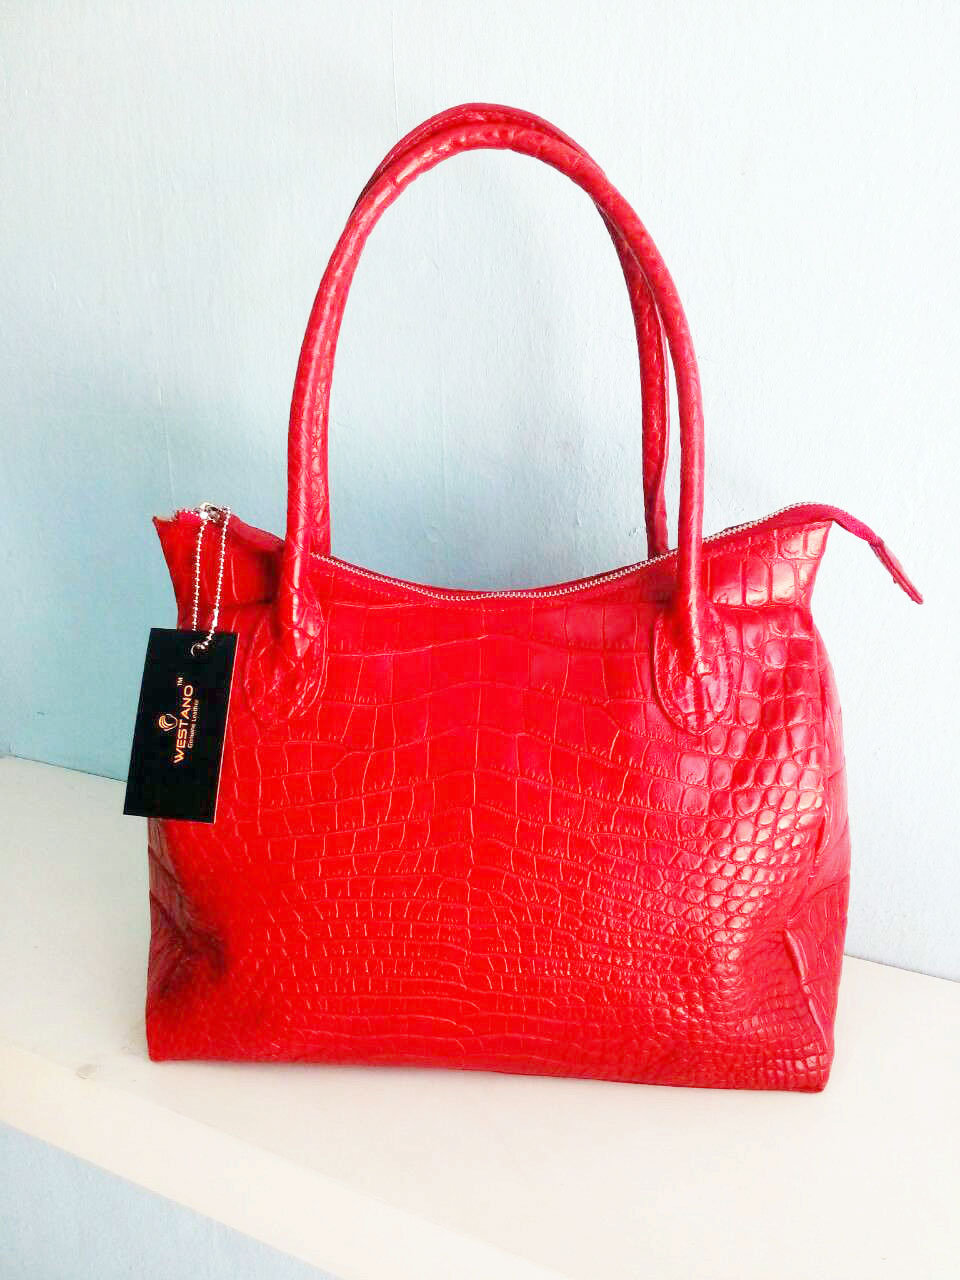 กระเป๋าหนังจระเข้แท้ สีแดง #CRW1217H-05-RE